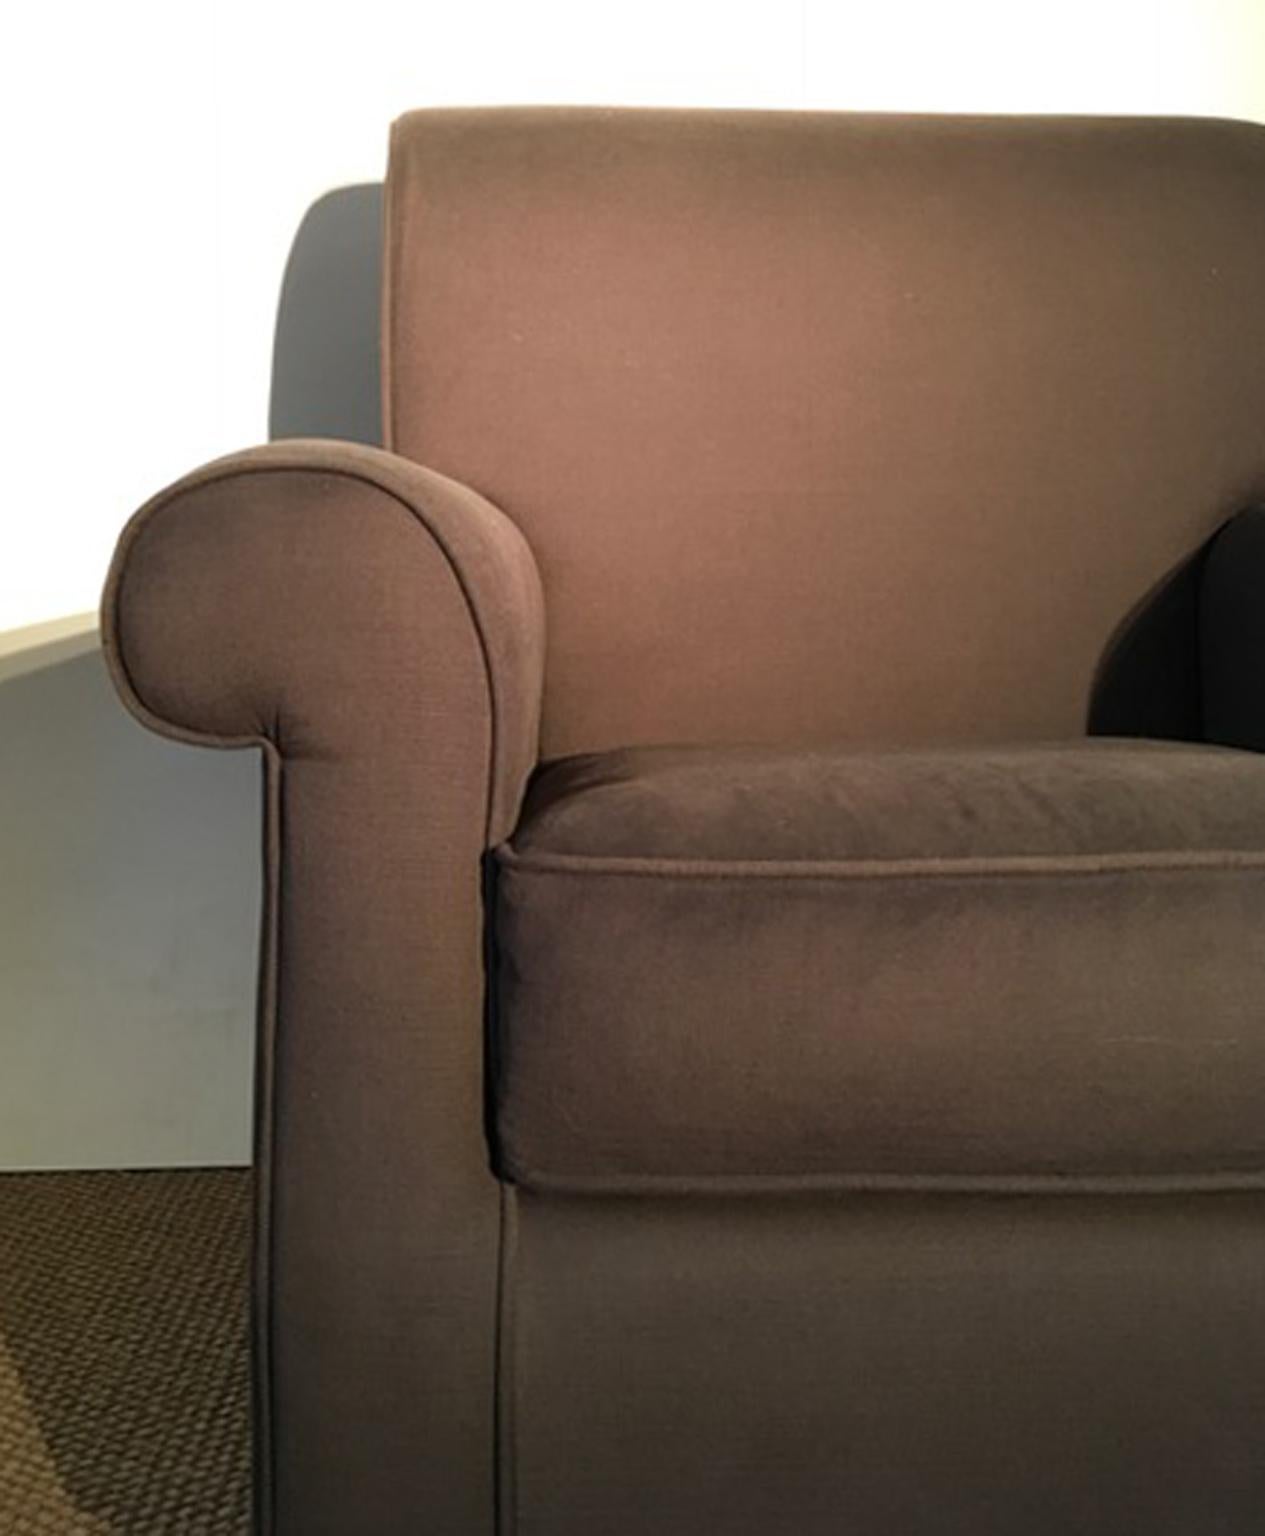 Dieser elegante Sessel wird in Italien von Hand gefertigt und vom italienischen Studio für Innenarchitektur DD Dimore entworfen. Es wurde mit reinem Leinen in der Farbe Kaffee bezogen. Die Form dieses Sessels ist in einem neuen, klassischen Stil